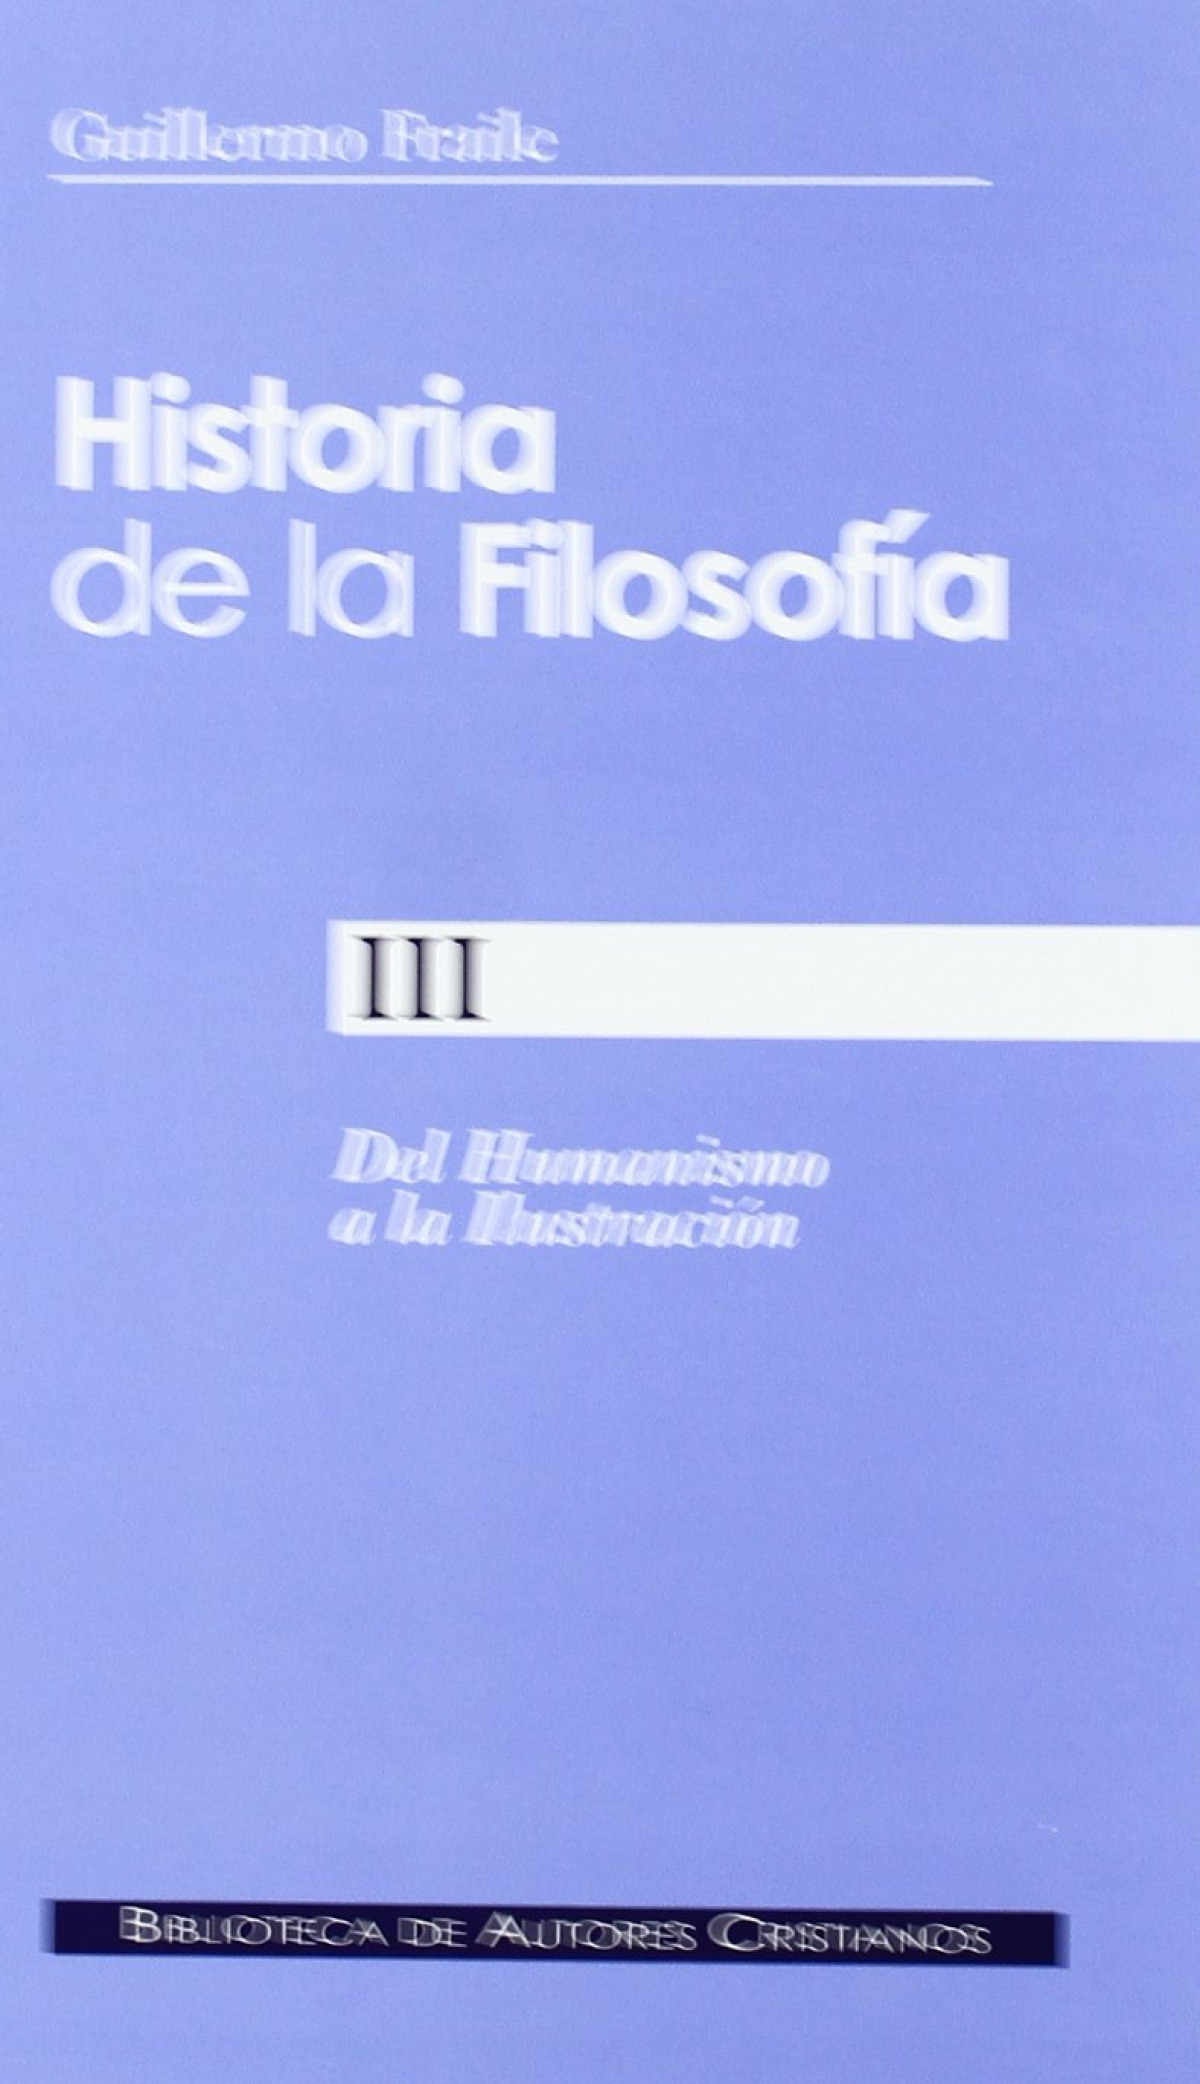 Historia de la filosofía iii del humanismo a la ilustración - Fraile, Guillermo